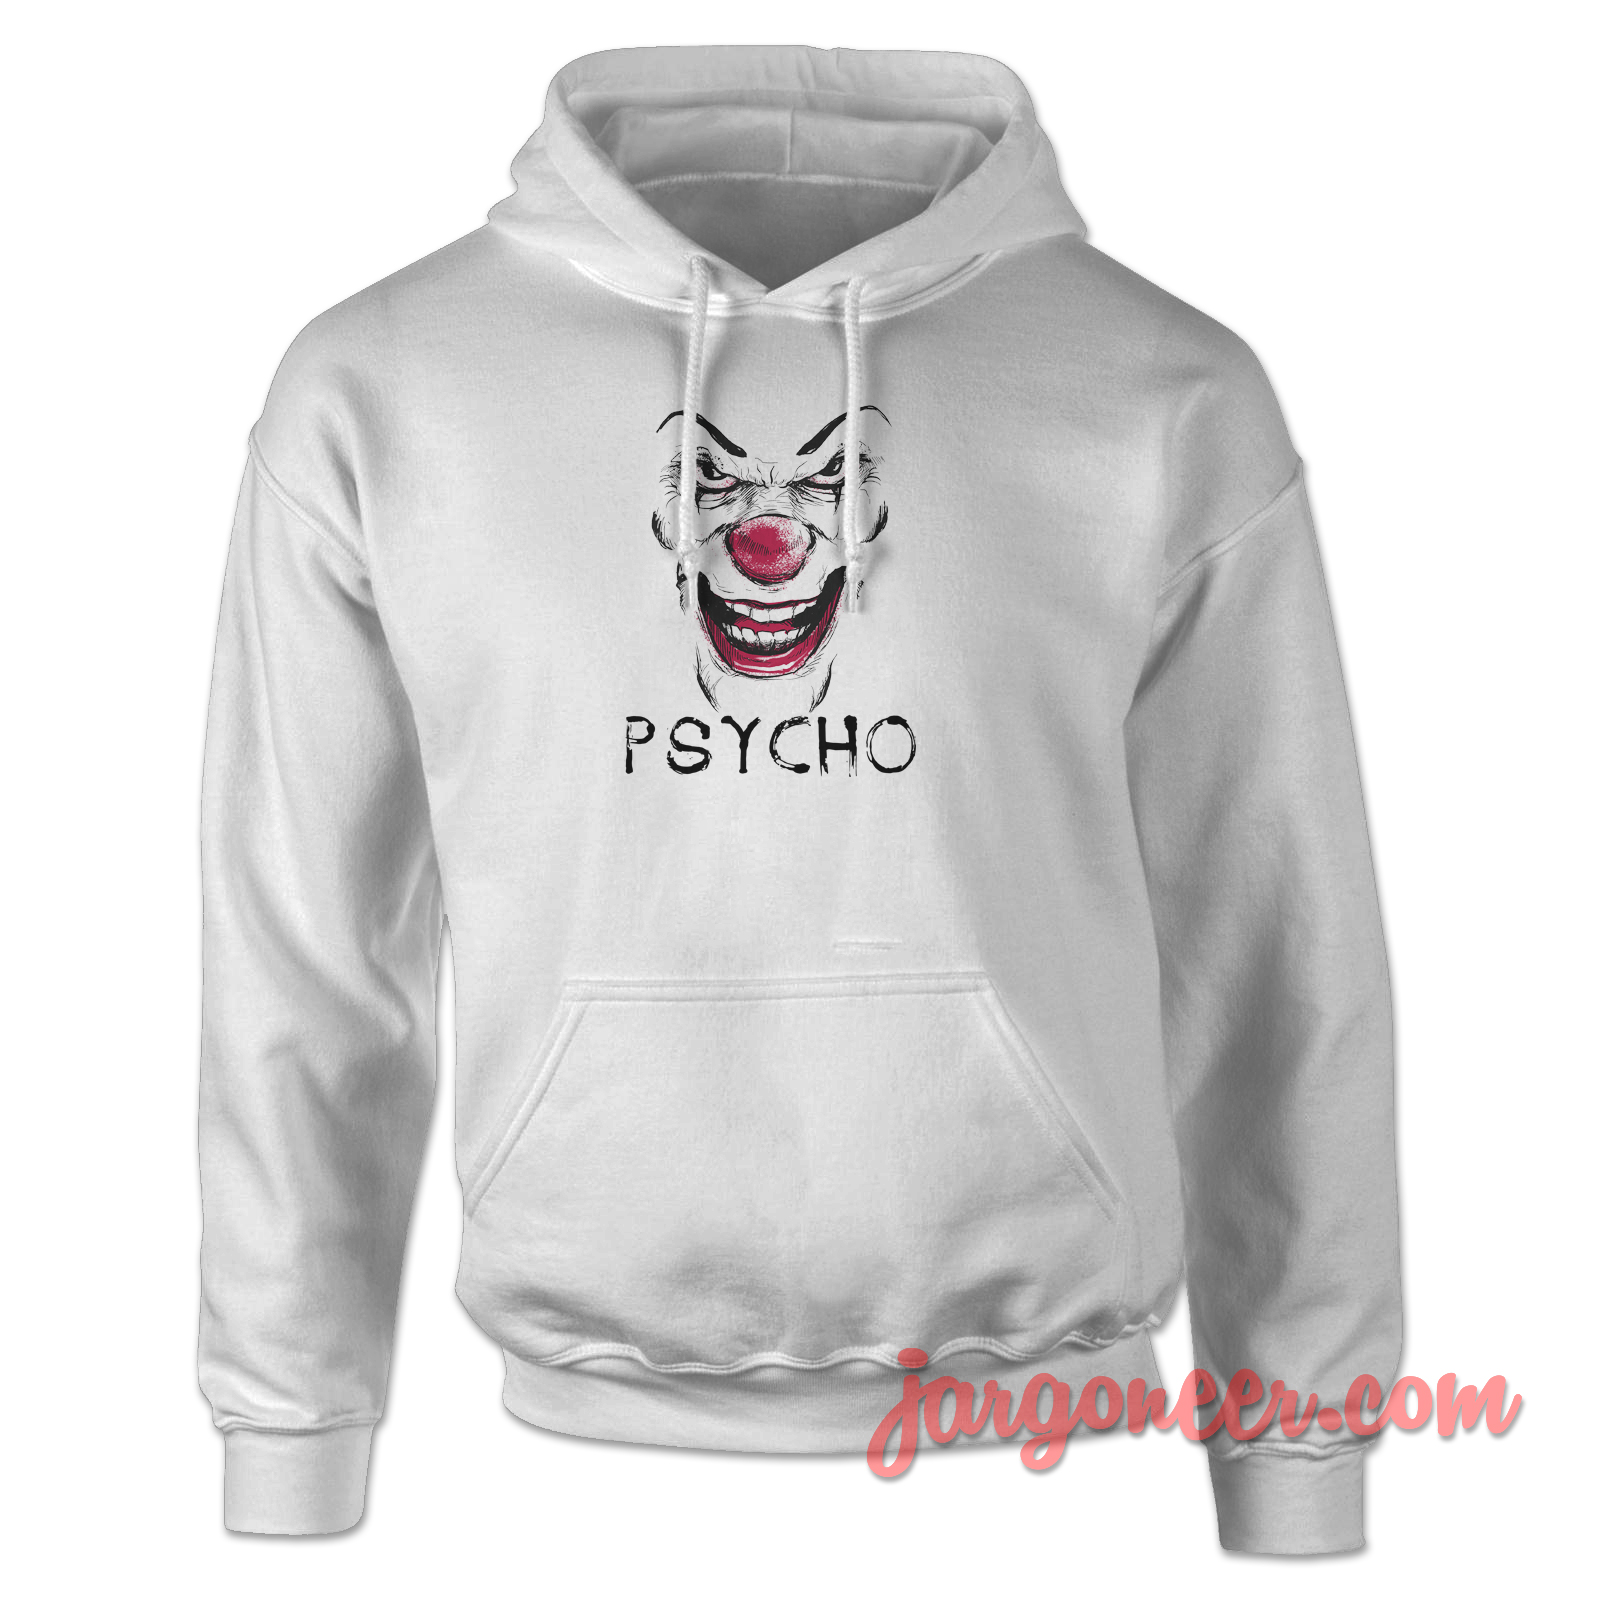 Psycho Clown 2 - Shop Unique Graphic Cool Shirt Designs